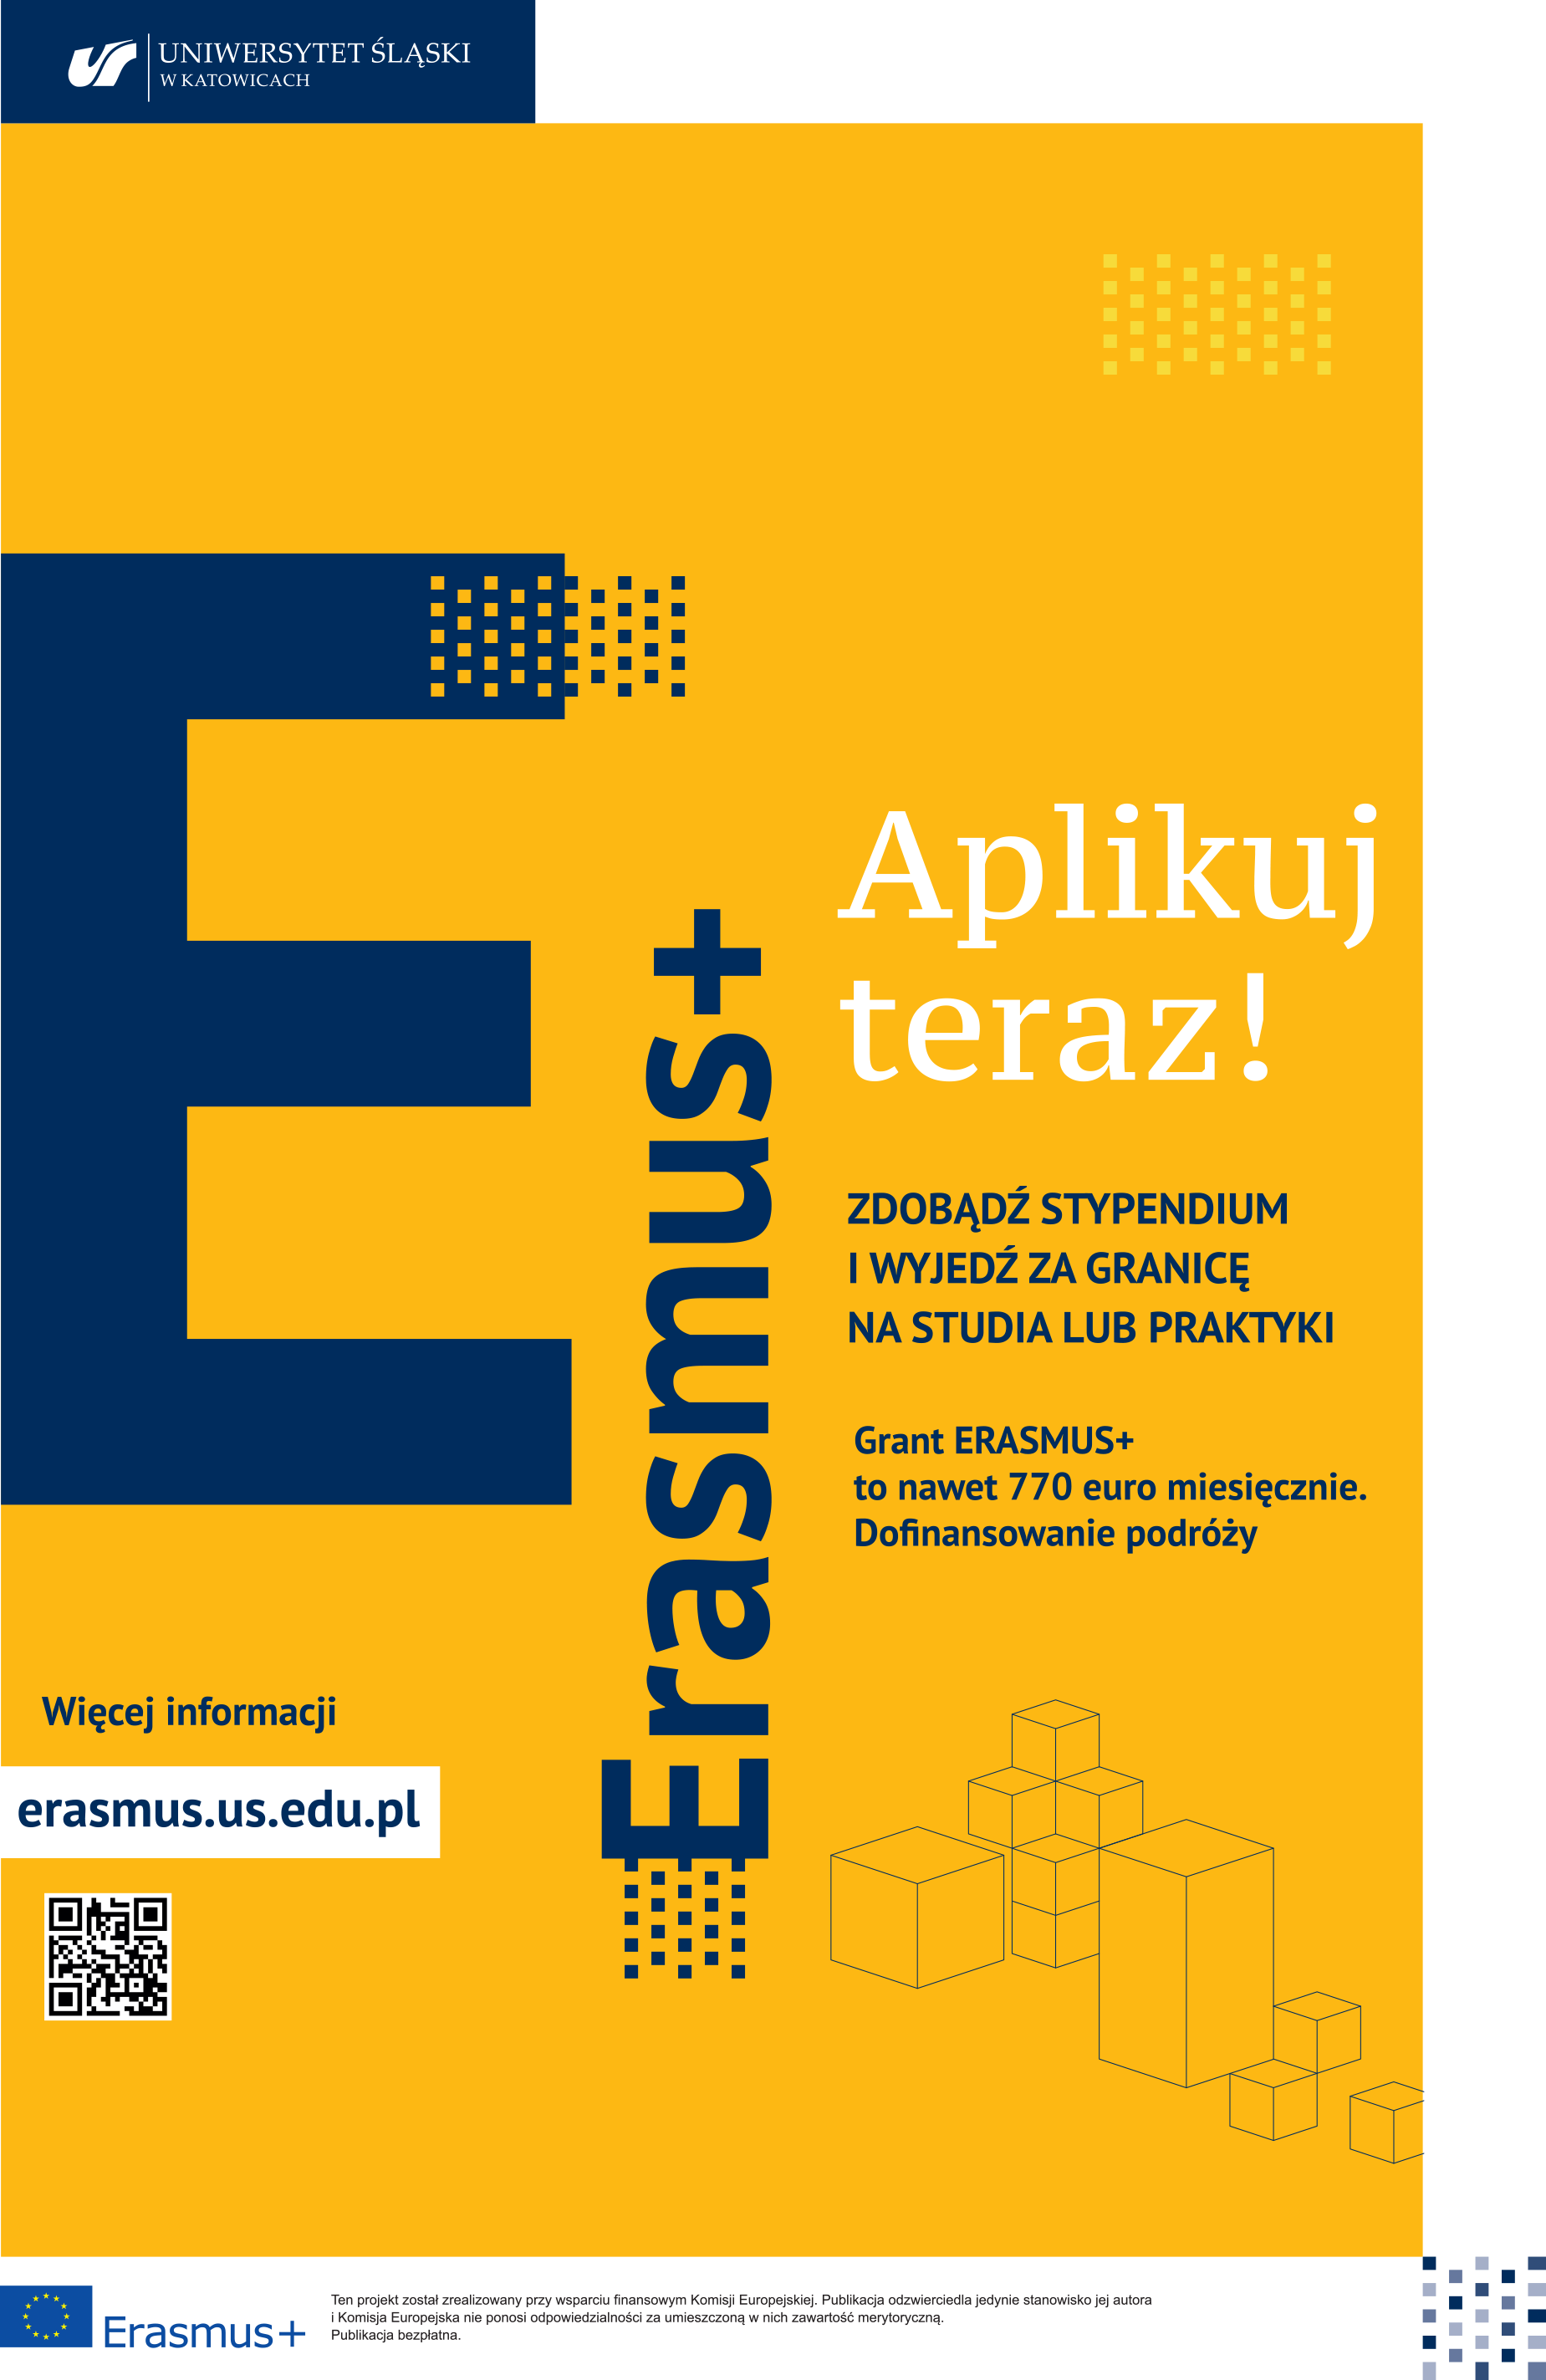 Erasmus+ Aplikuj teraz! szczegółowe inforamcje na stronie: erasmus.us.edu.pl